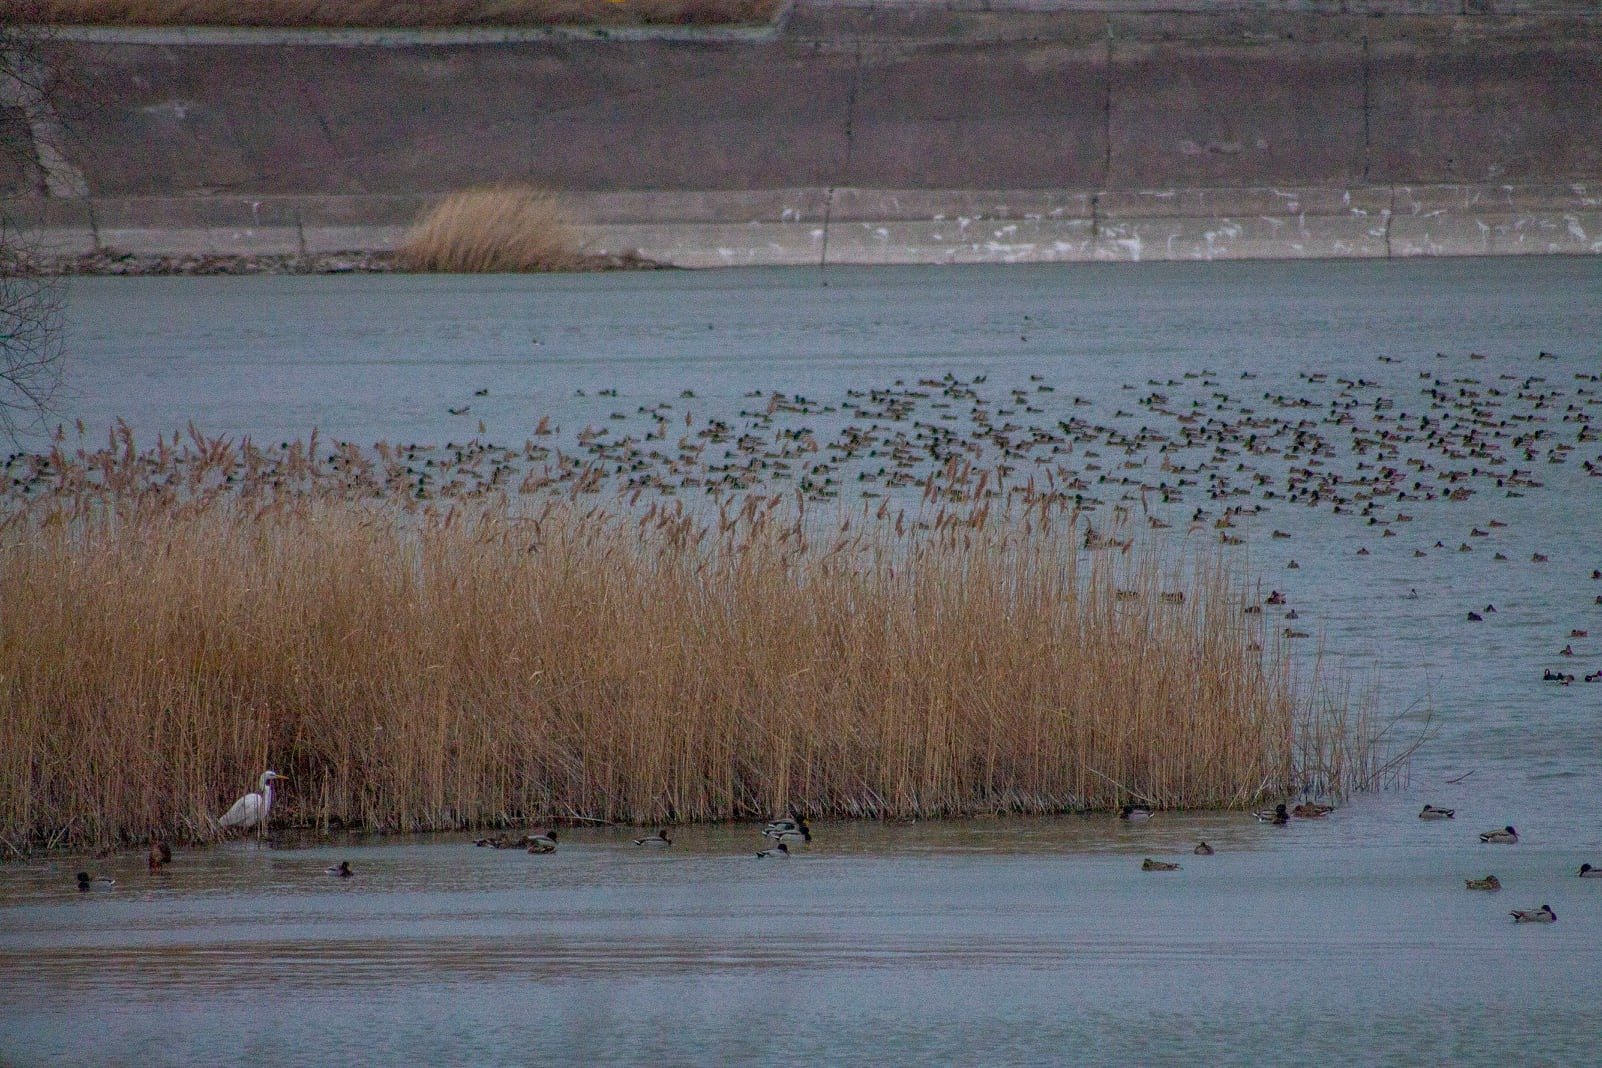  FOTO: Păsările din aria Lacului Stânca Costești sunt numărate zilele acestea